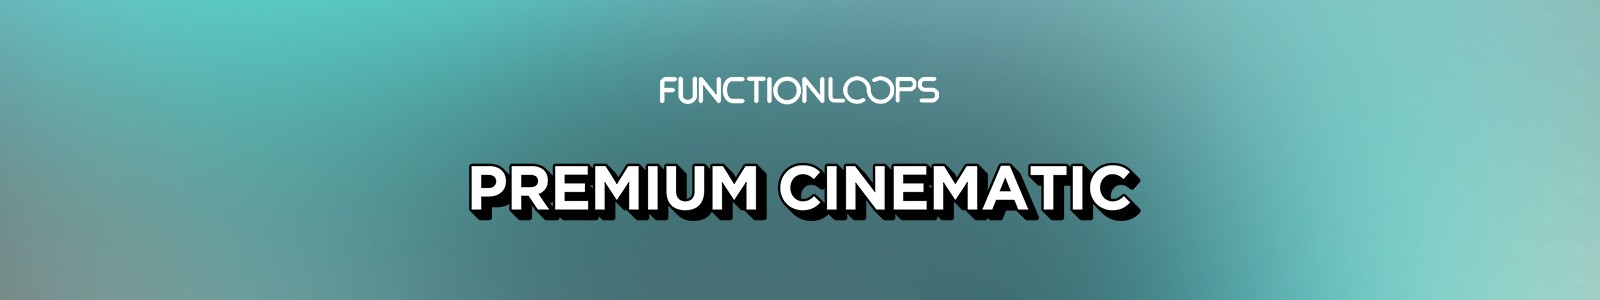 Premium Cinematic